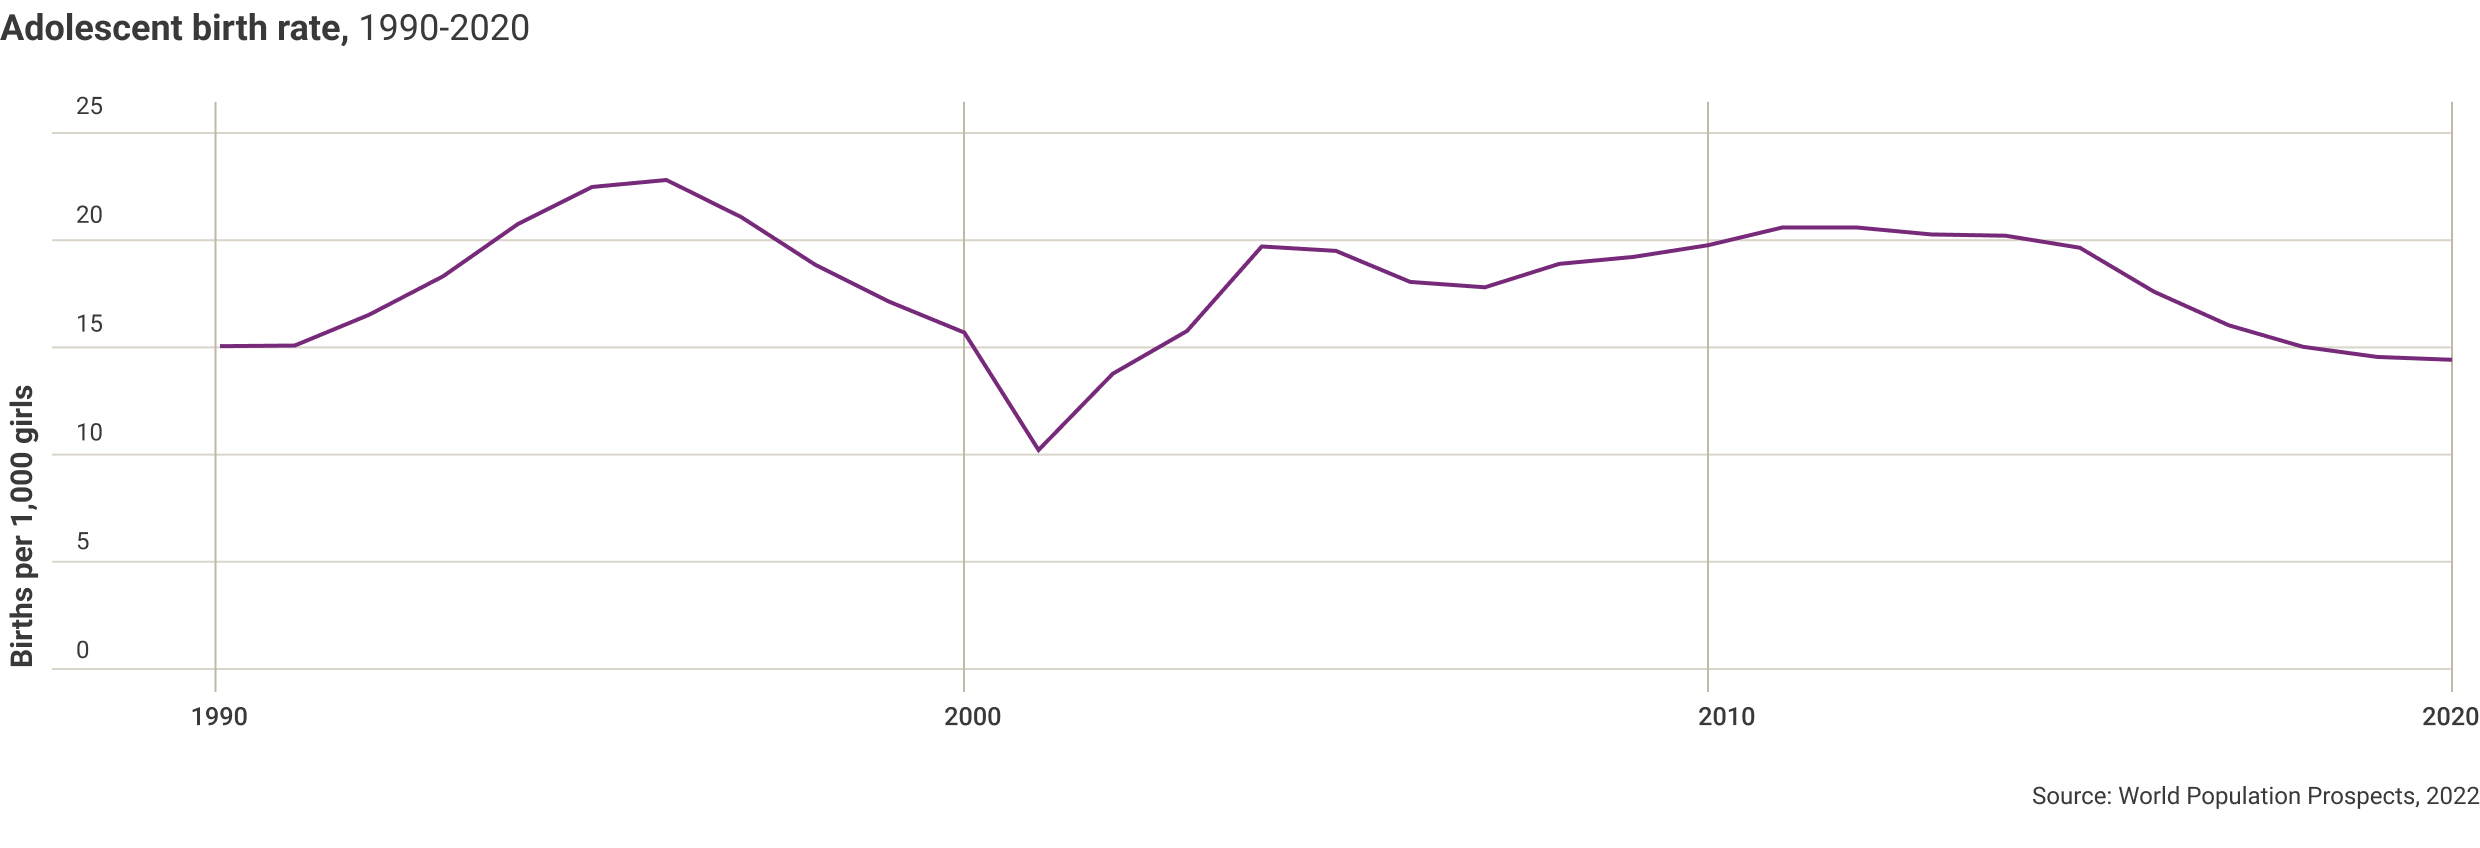 adolescent-birth-rate-1990-2020